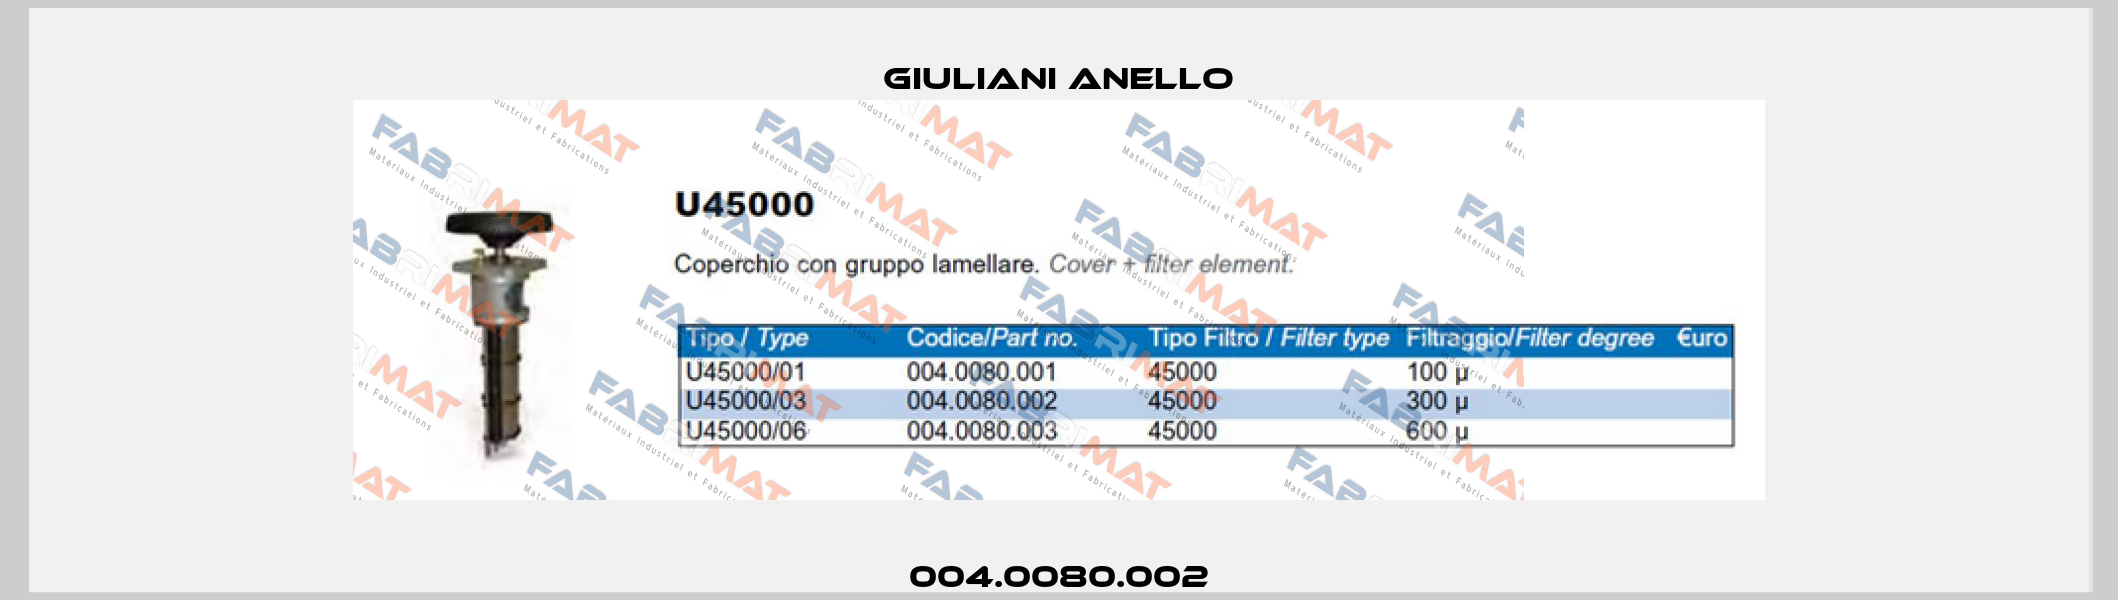 004.0080.002 Giuliani Anello